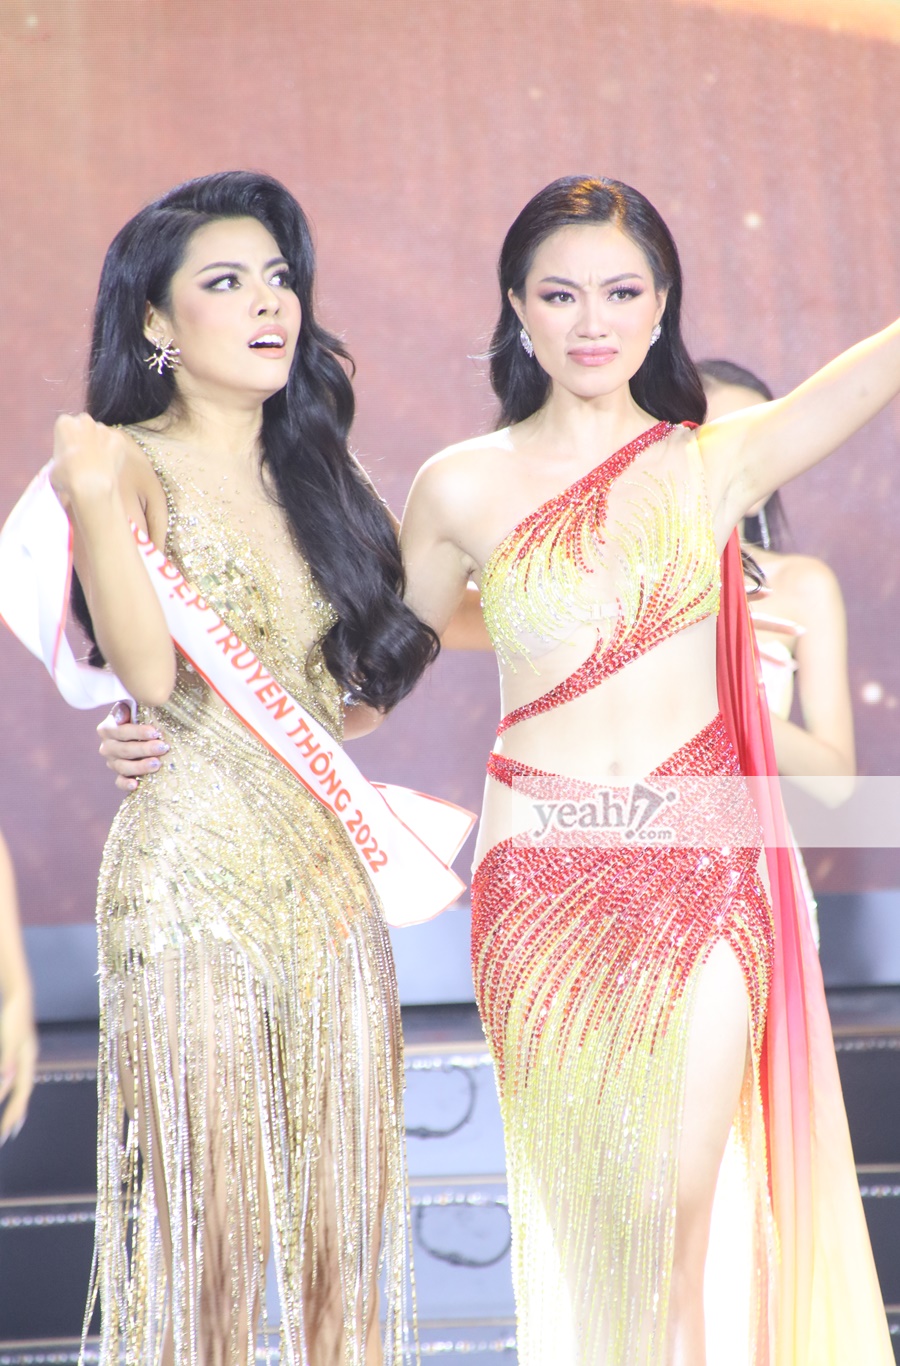 Biểu cảm khó hiểu của 2 mỹ nhân Miss Fitness Vietnam: Hoa hậu nhăn nhó, Á hậu 1 lại 'drama' như phim Ấn Độ? - ảnh 5